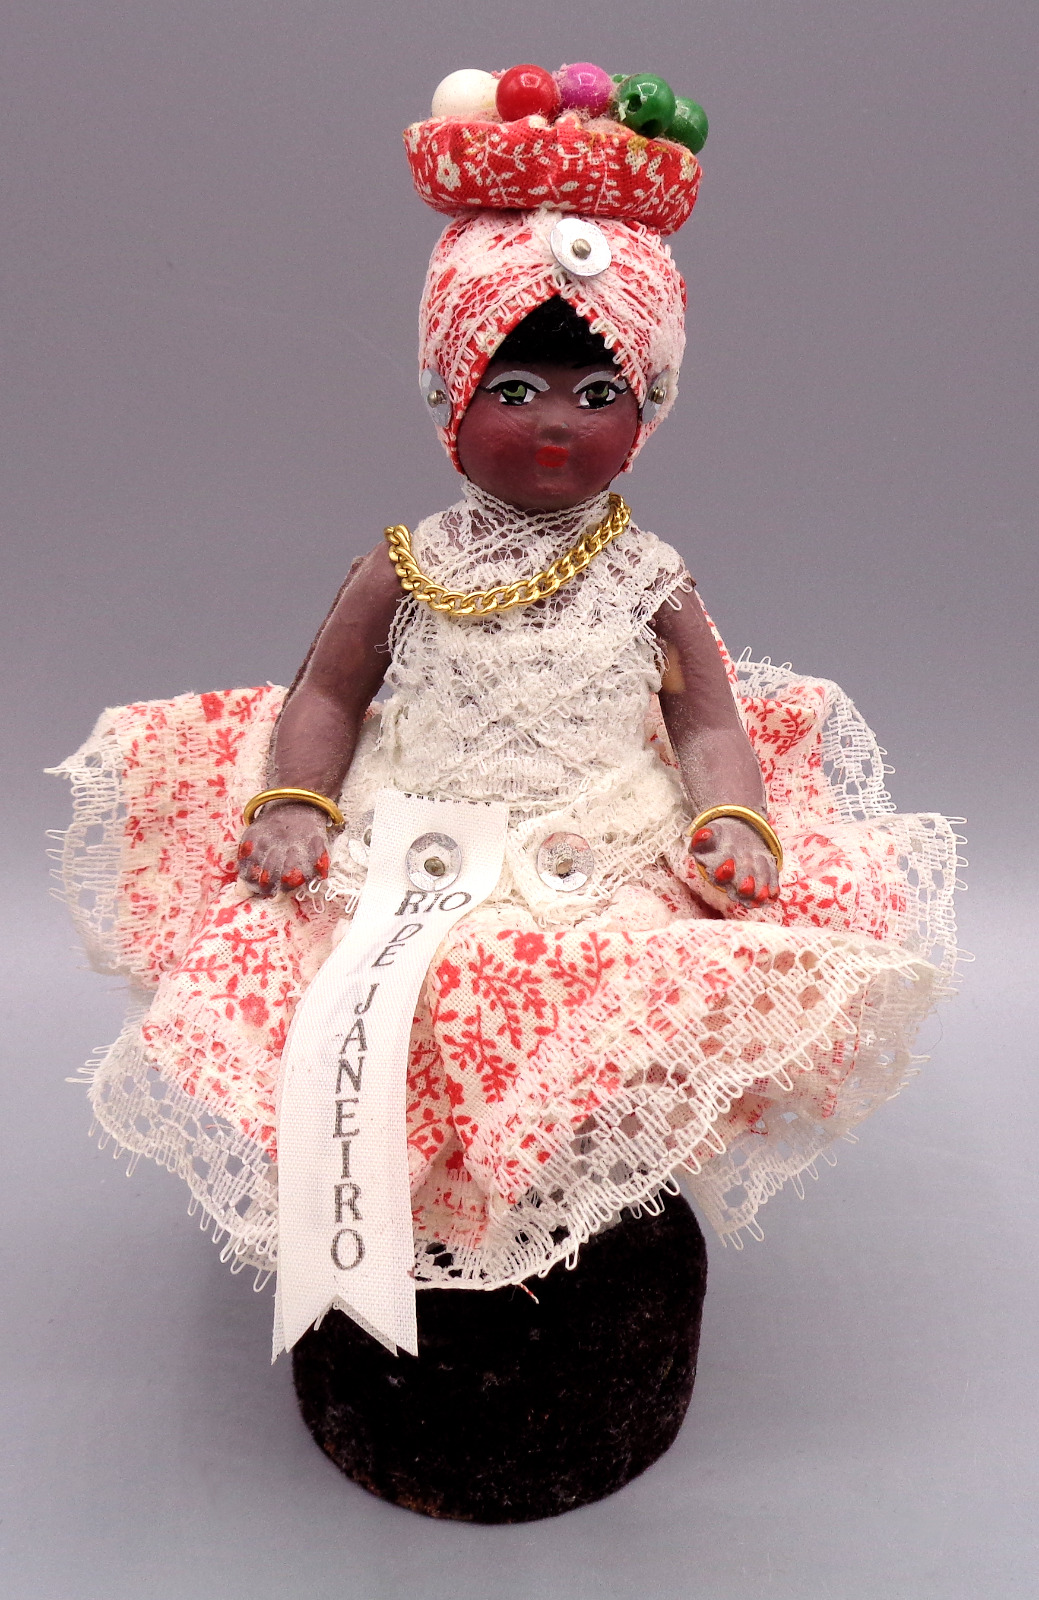 Vintage Rio de Janeiro Girl Woman Souvenir Doll Figurine